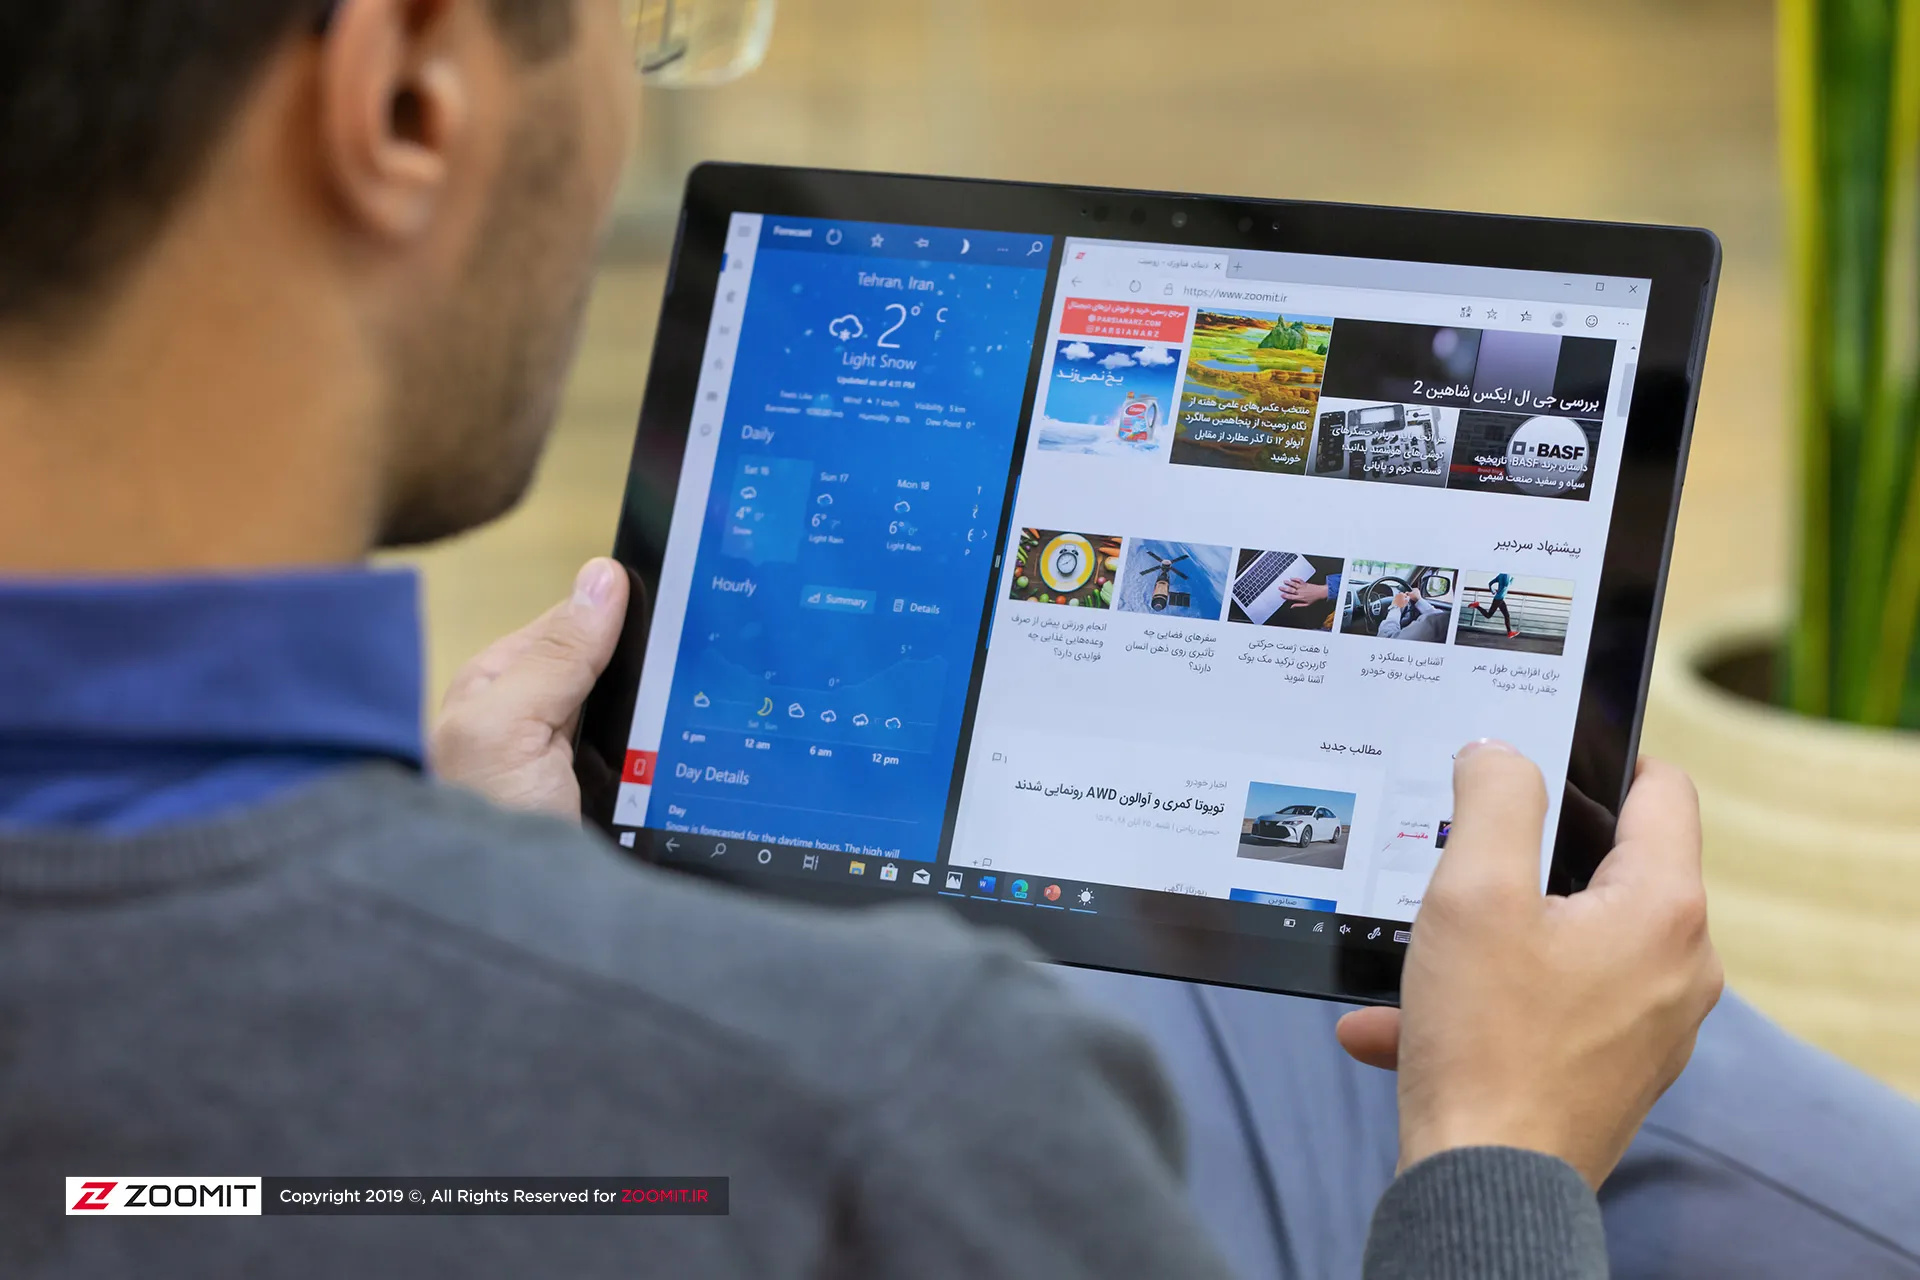 مرجع متخصصين ايران سرفيس پرو 7 / Surface Pro 7